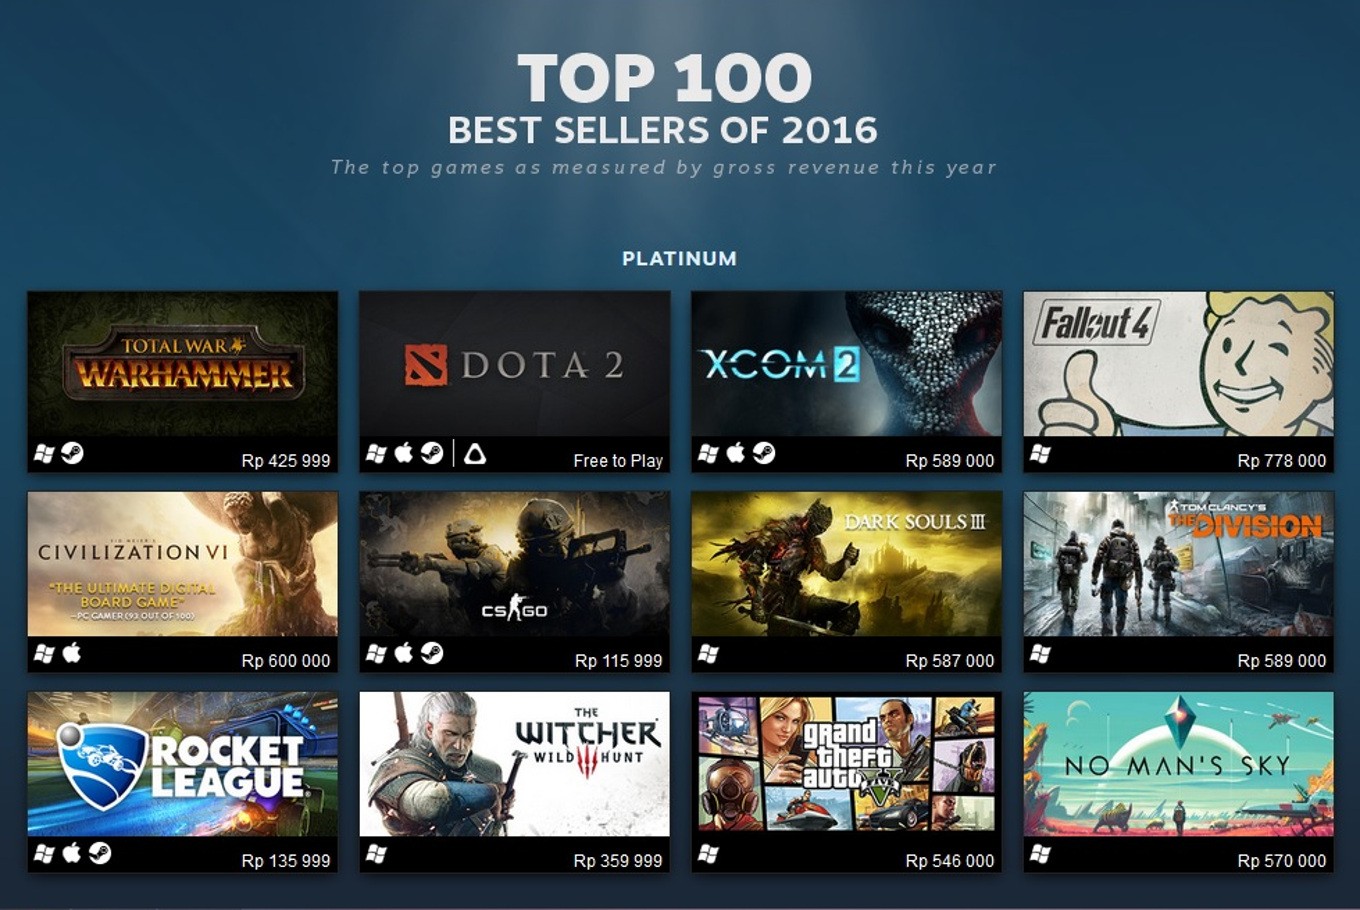 Steam lista os 100 jogos mais vendidos de 2016 